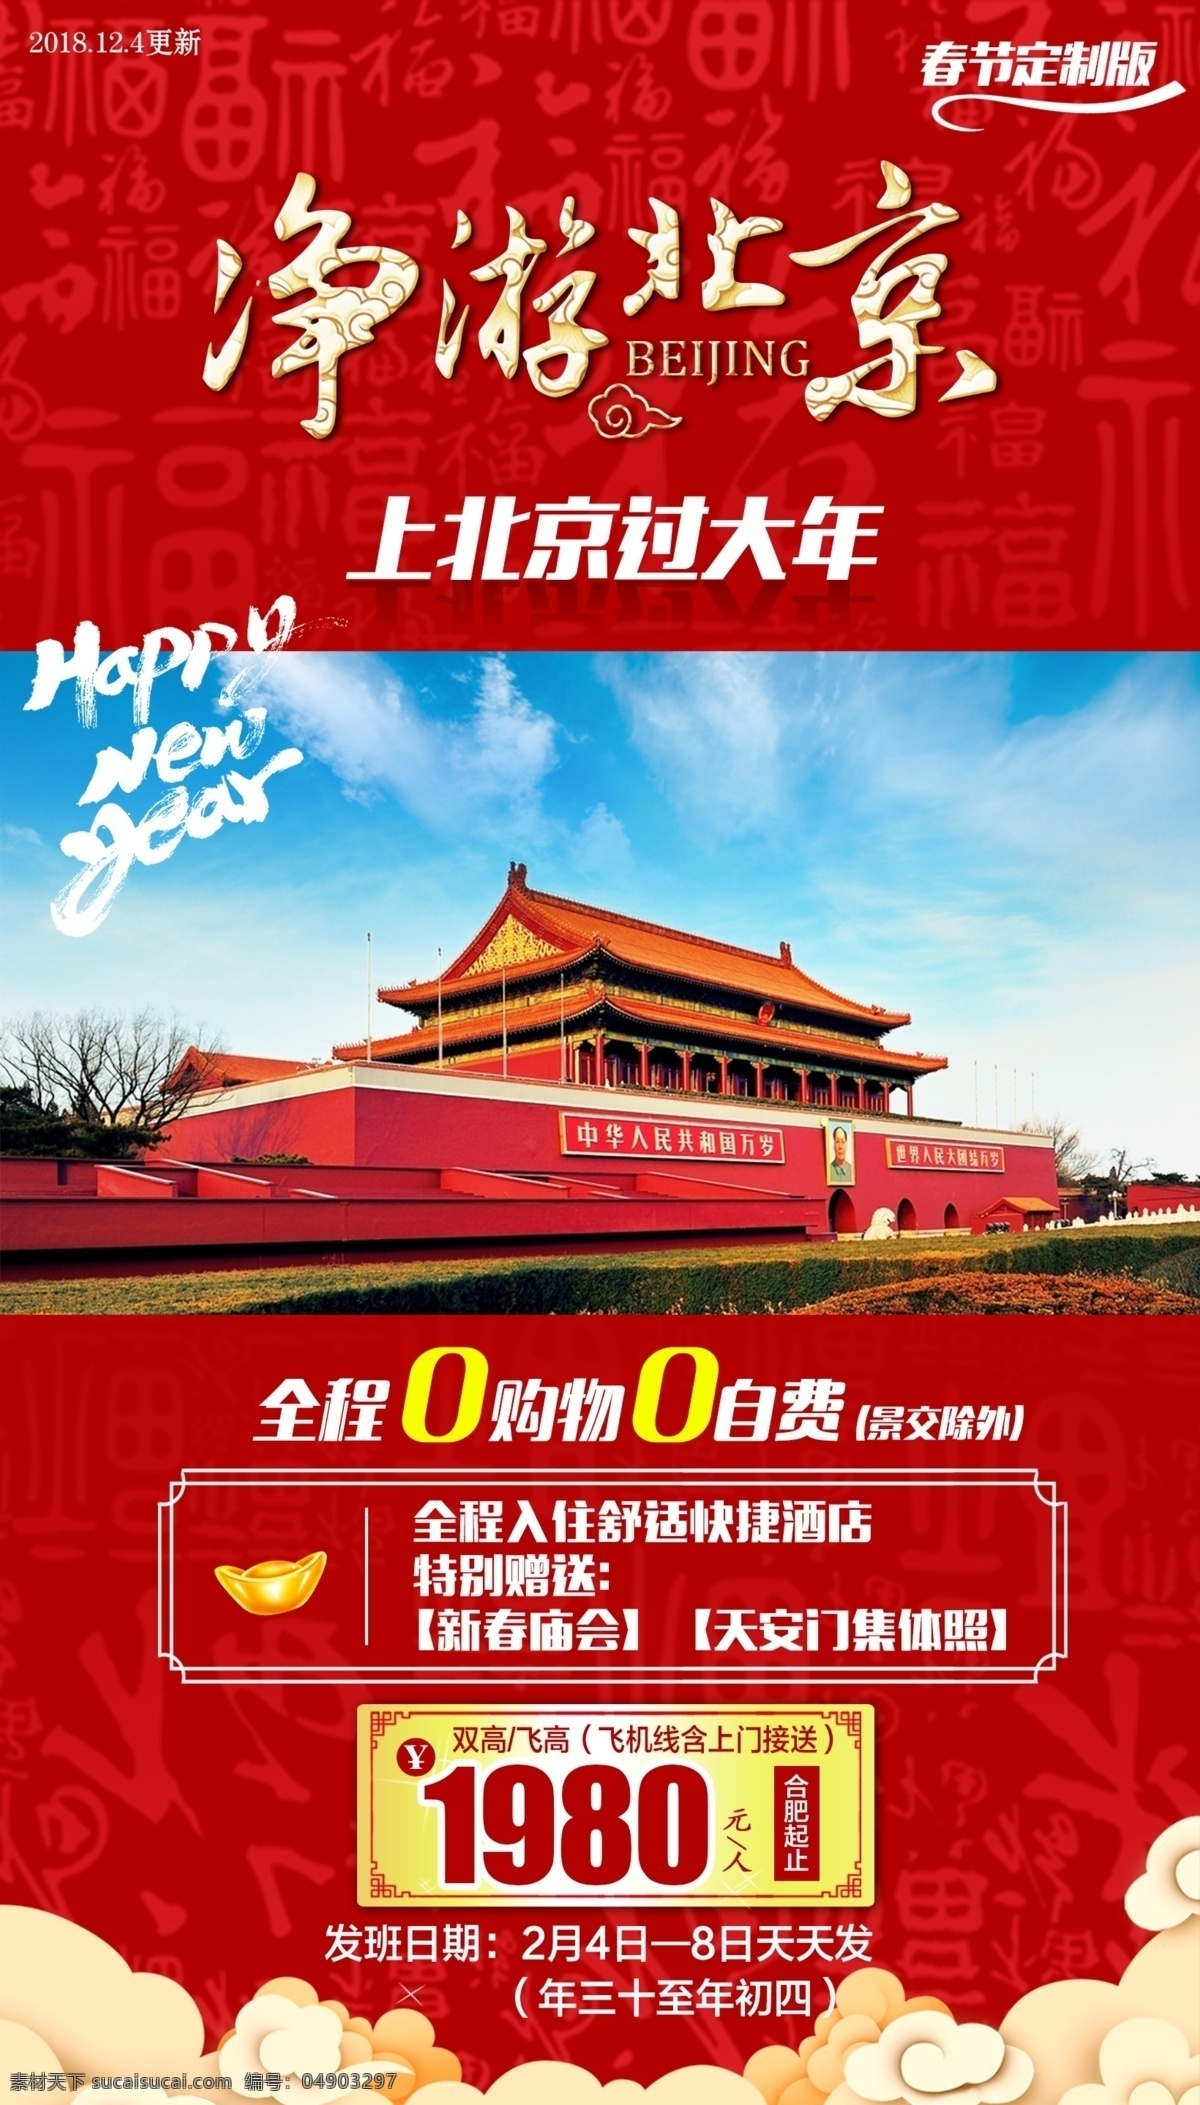 北京旅游 旅游平面设计 旅游设计 平面设计 自由行 旅游海报 红色几何形 背景 风景 故宫 蓝天白云 古建筑 中国风 旅游